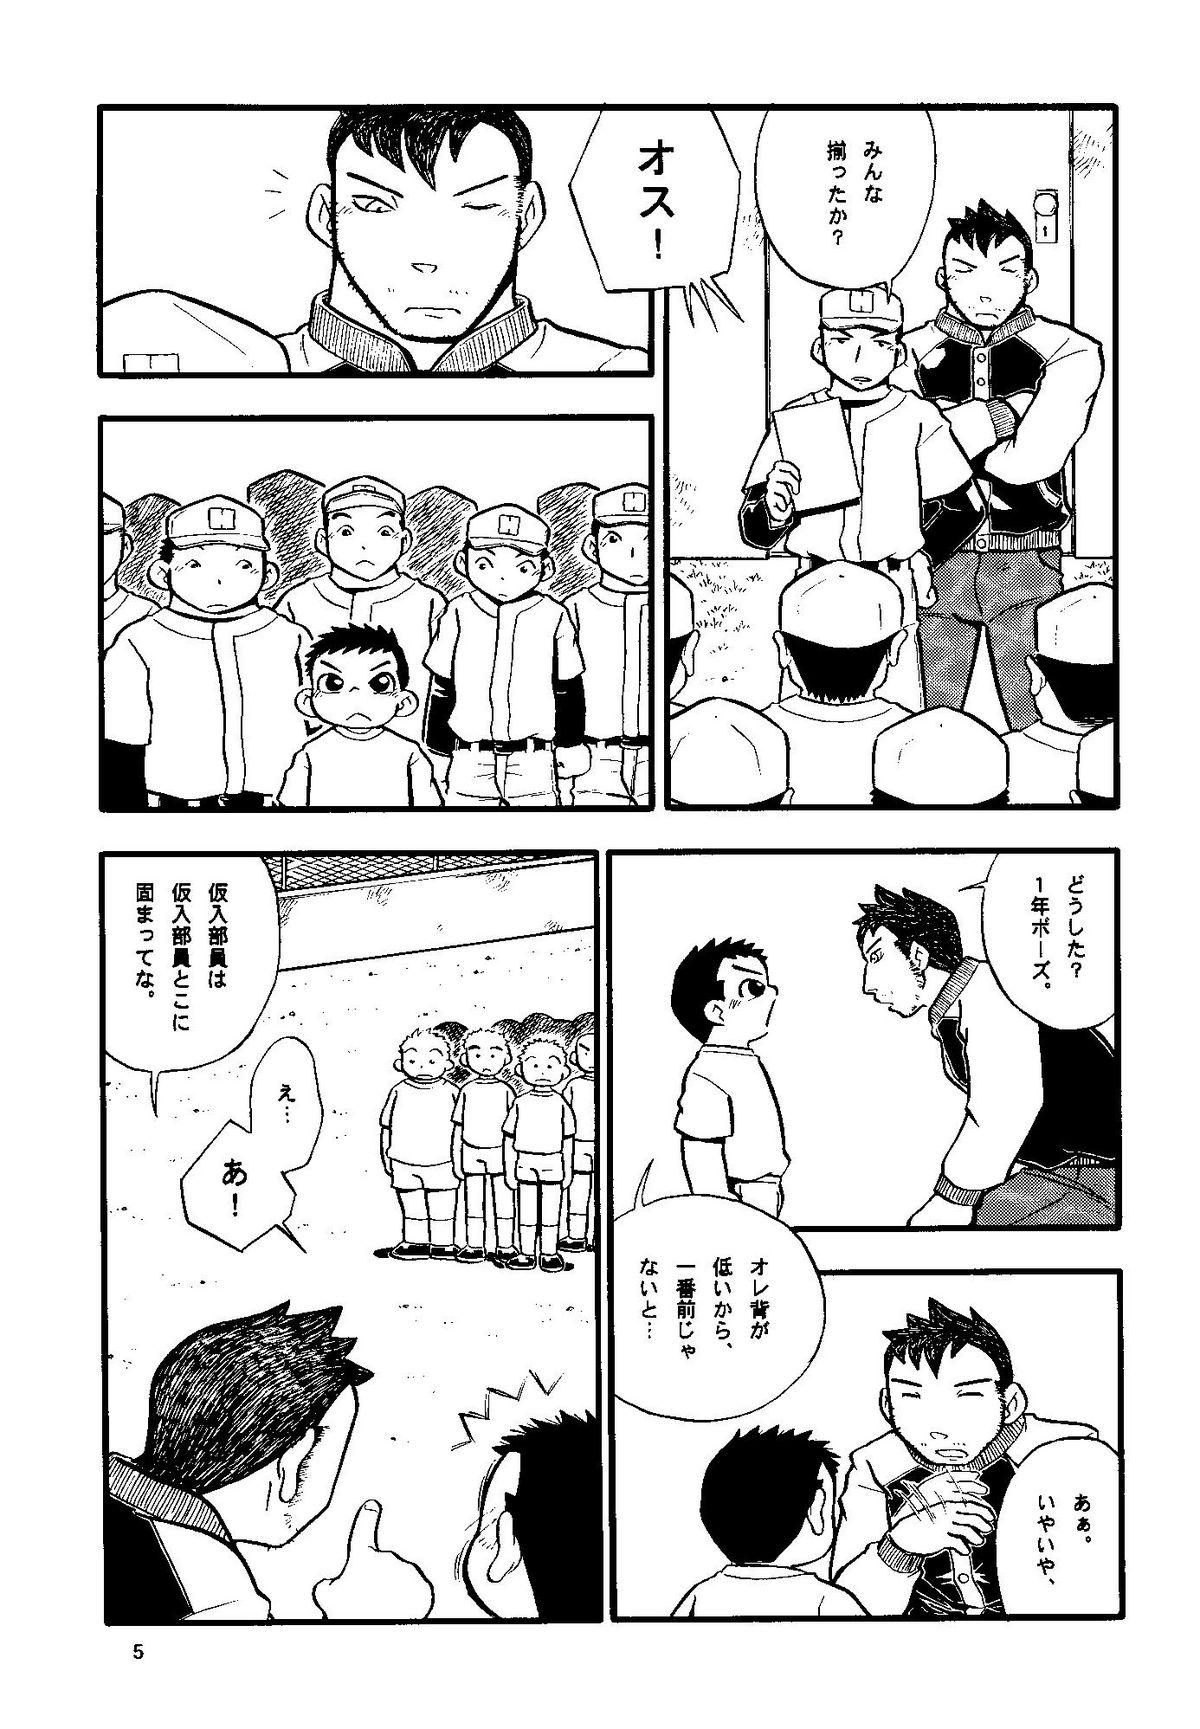 Bigcocks Futoshi Yagihiroshi (Yuubinya) - Youta to Sempai Exibicionismo - Page 5